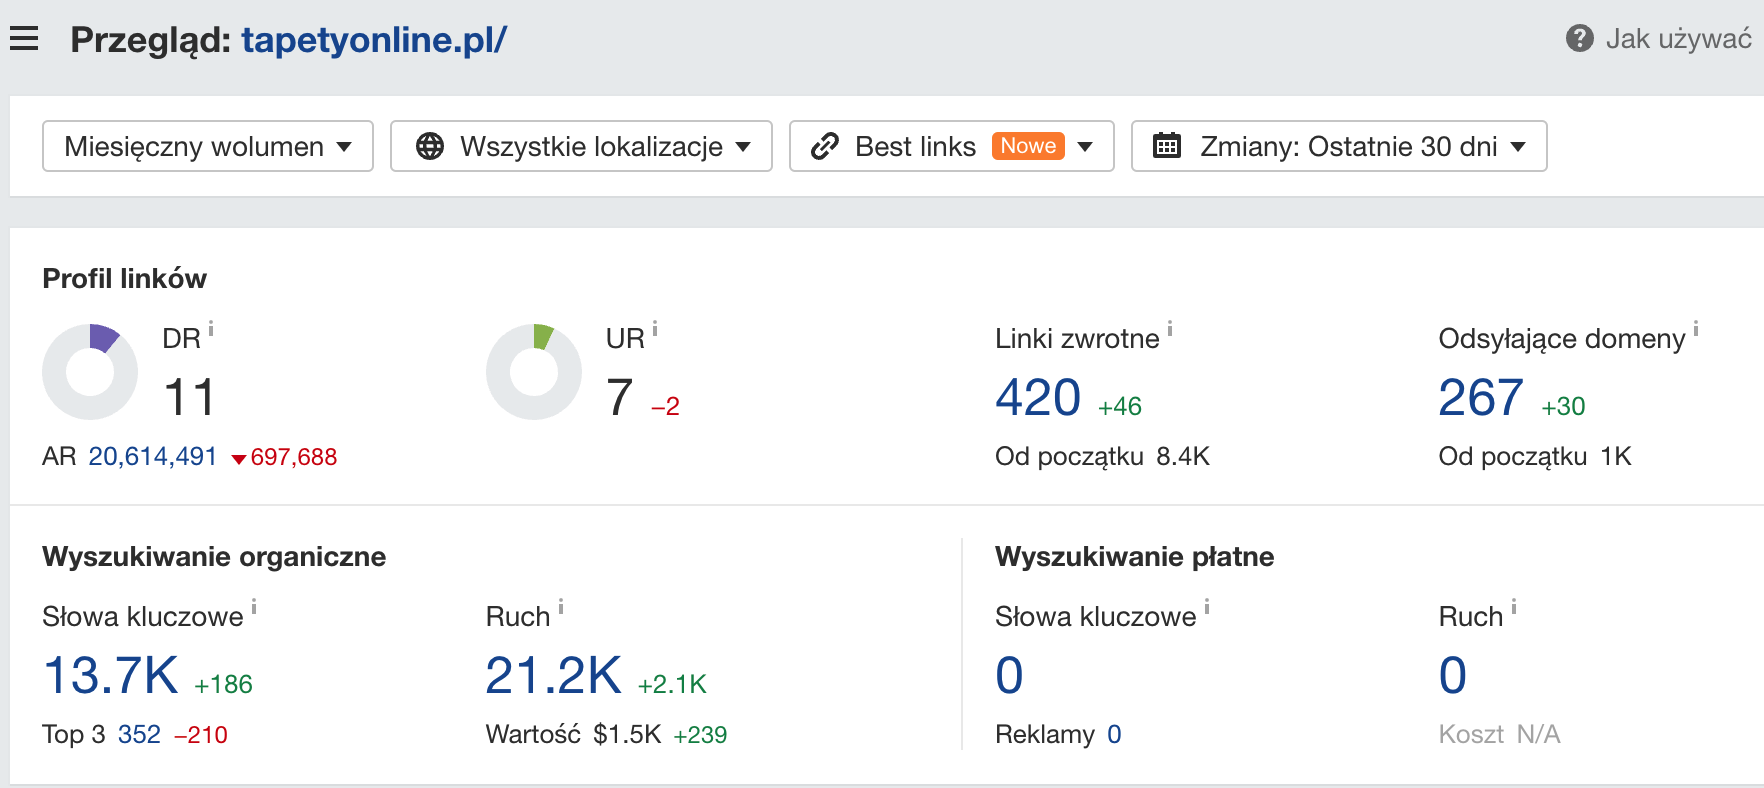 tapetyonline.pl: informacje o domenie